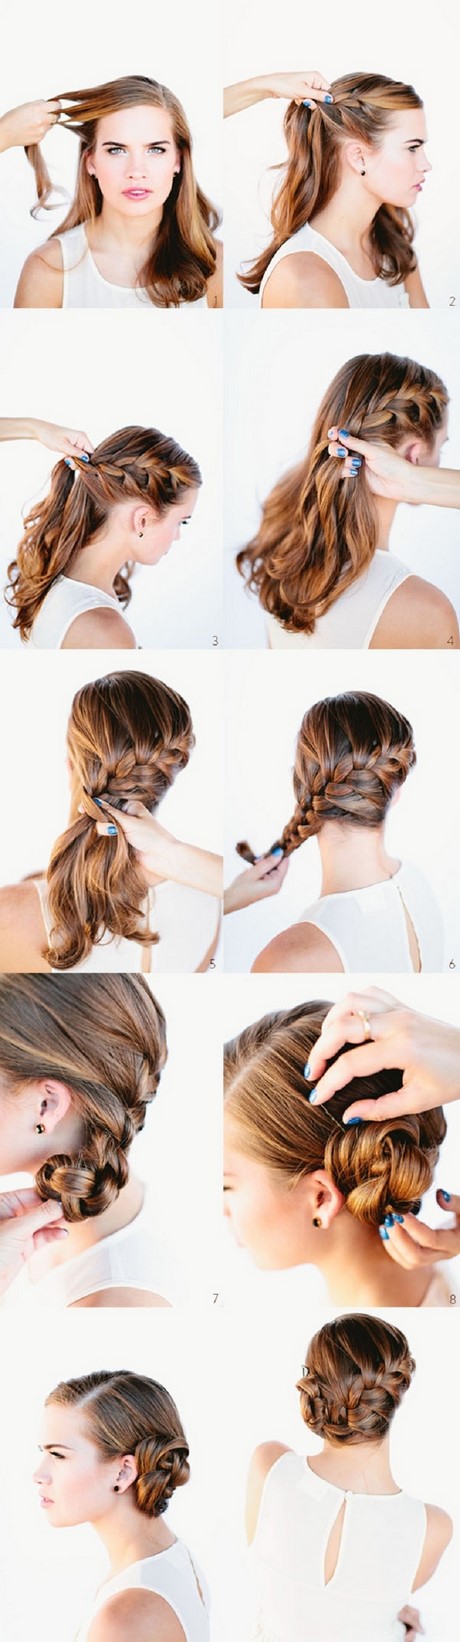 top-10-braided-hairstyles-45 Top 10 braided hairstyles